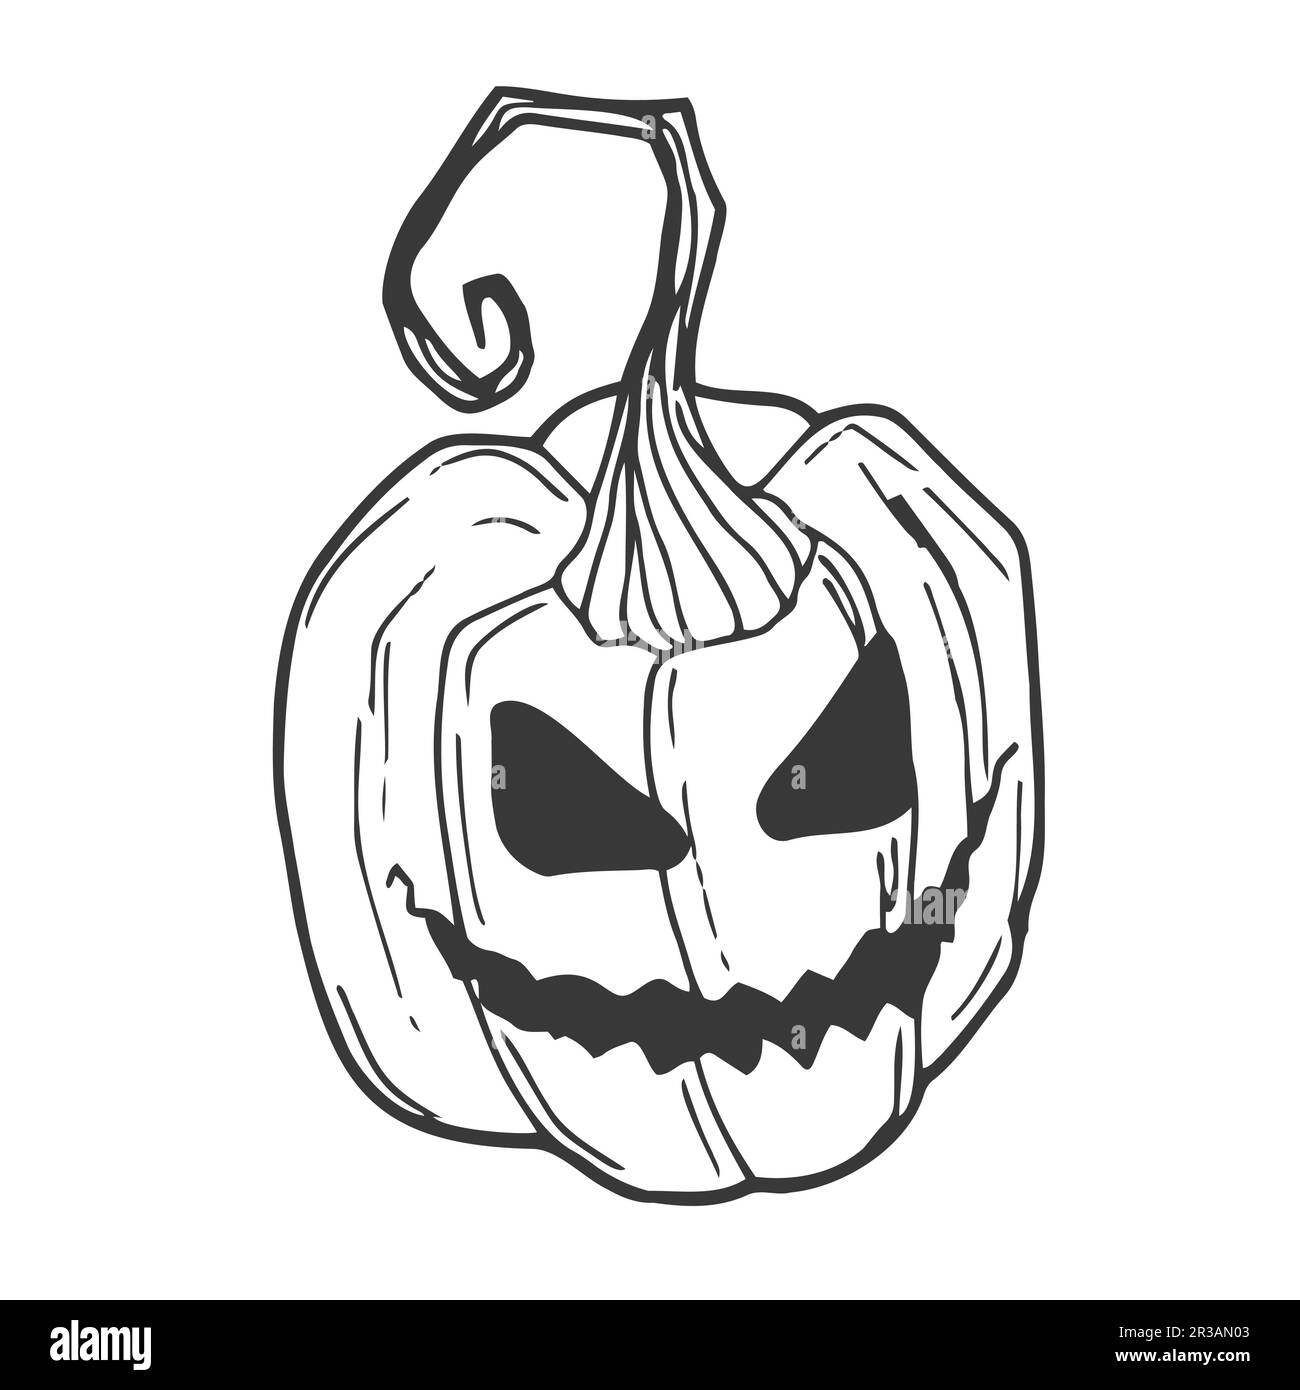 Halloween-Kürbis. Vektorkonzept im Doodle- und Skizzenstil. Handgezeichnete Illustration zum Drucken auf T-Shirts und Postkarten. Stock Vektor